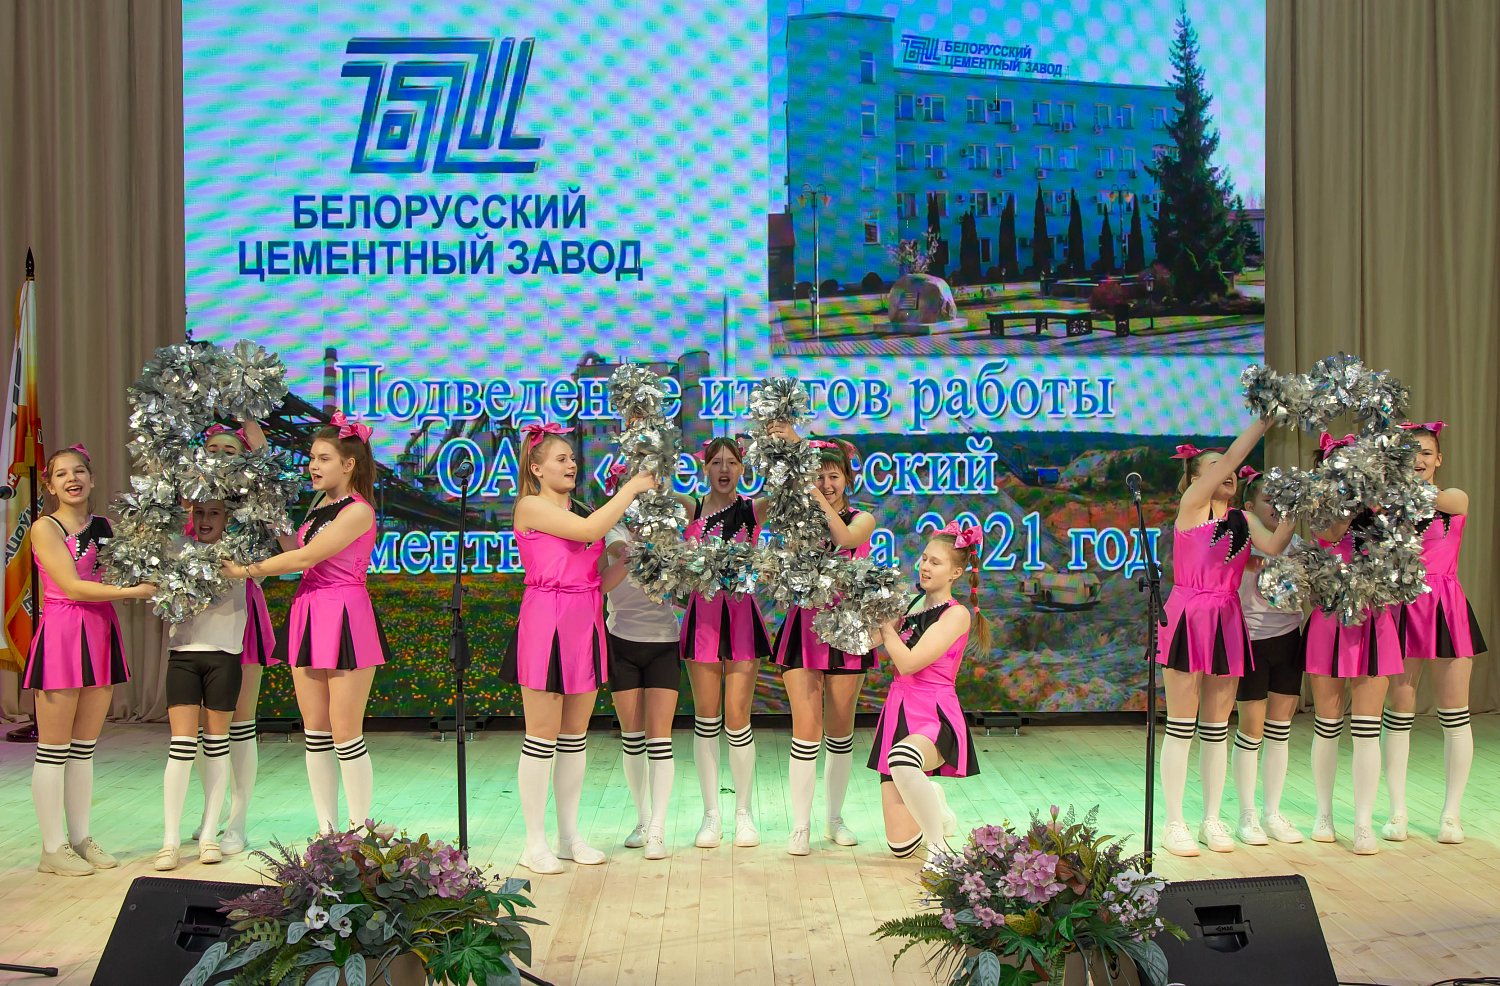 Белорусскому цементному заводу вручено переходящее Почетное знамя холдинга «Белорусская цементная компания»